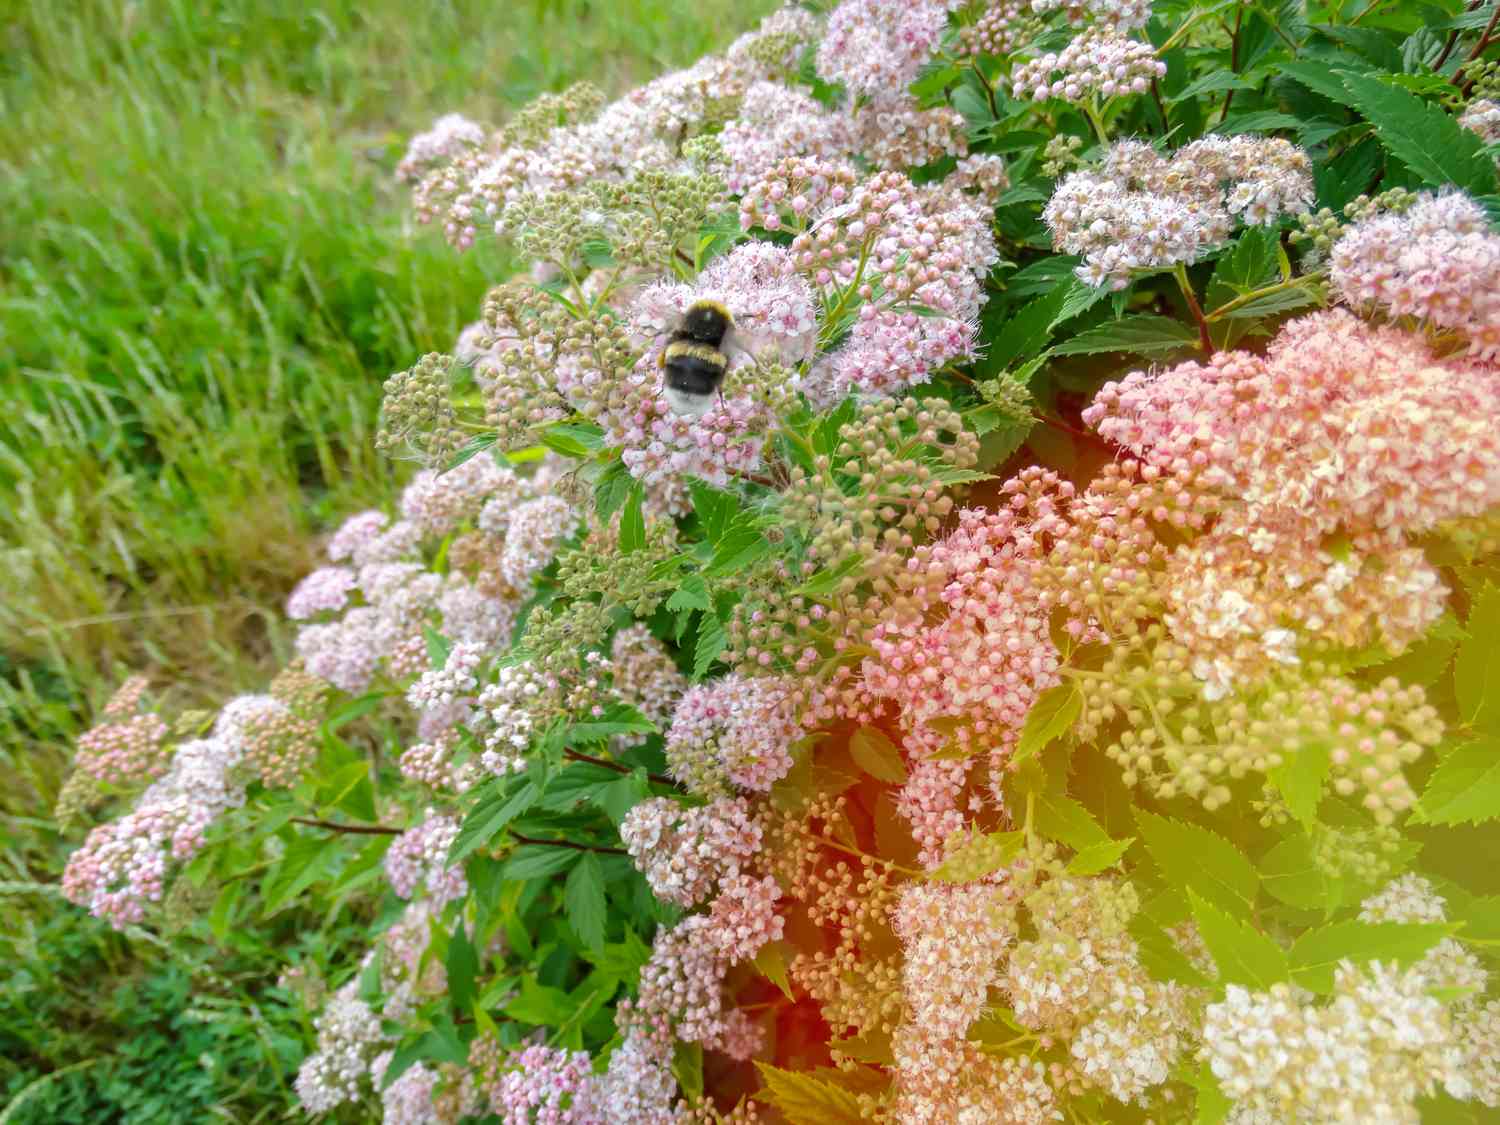 arbusto de spirea princesita con una abeja encima